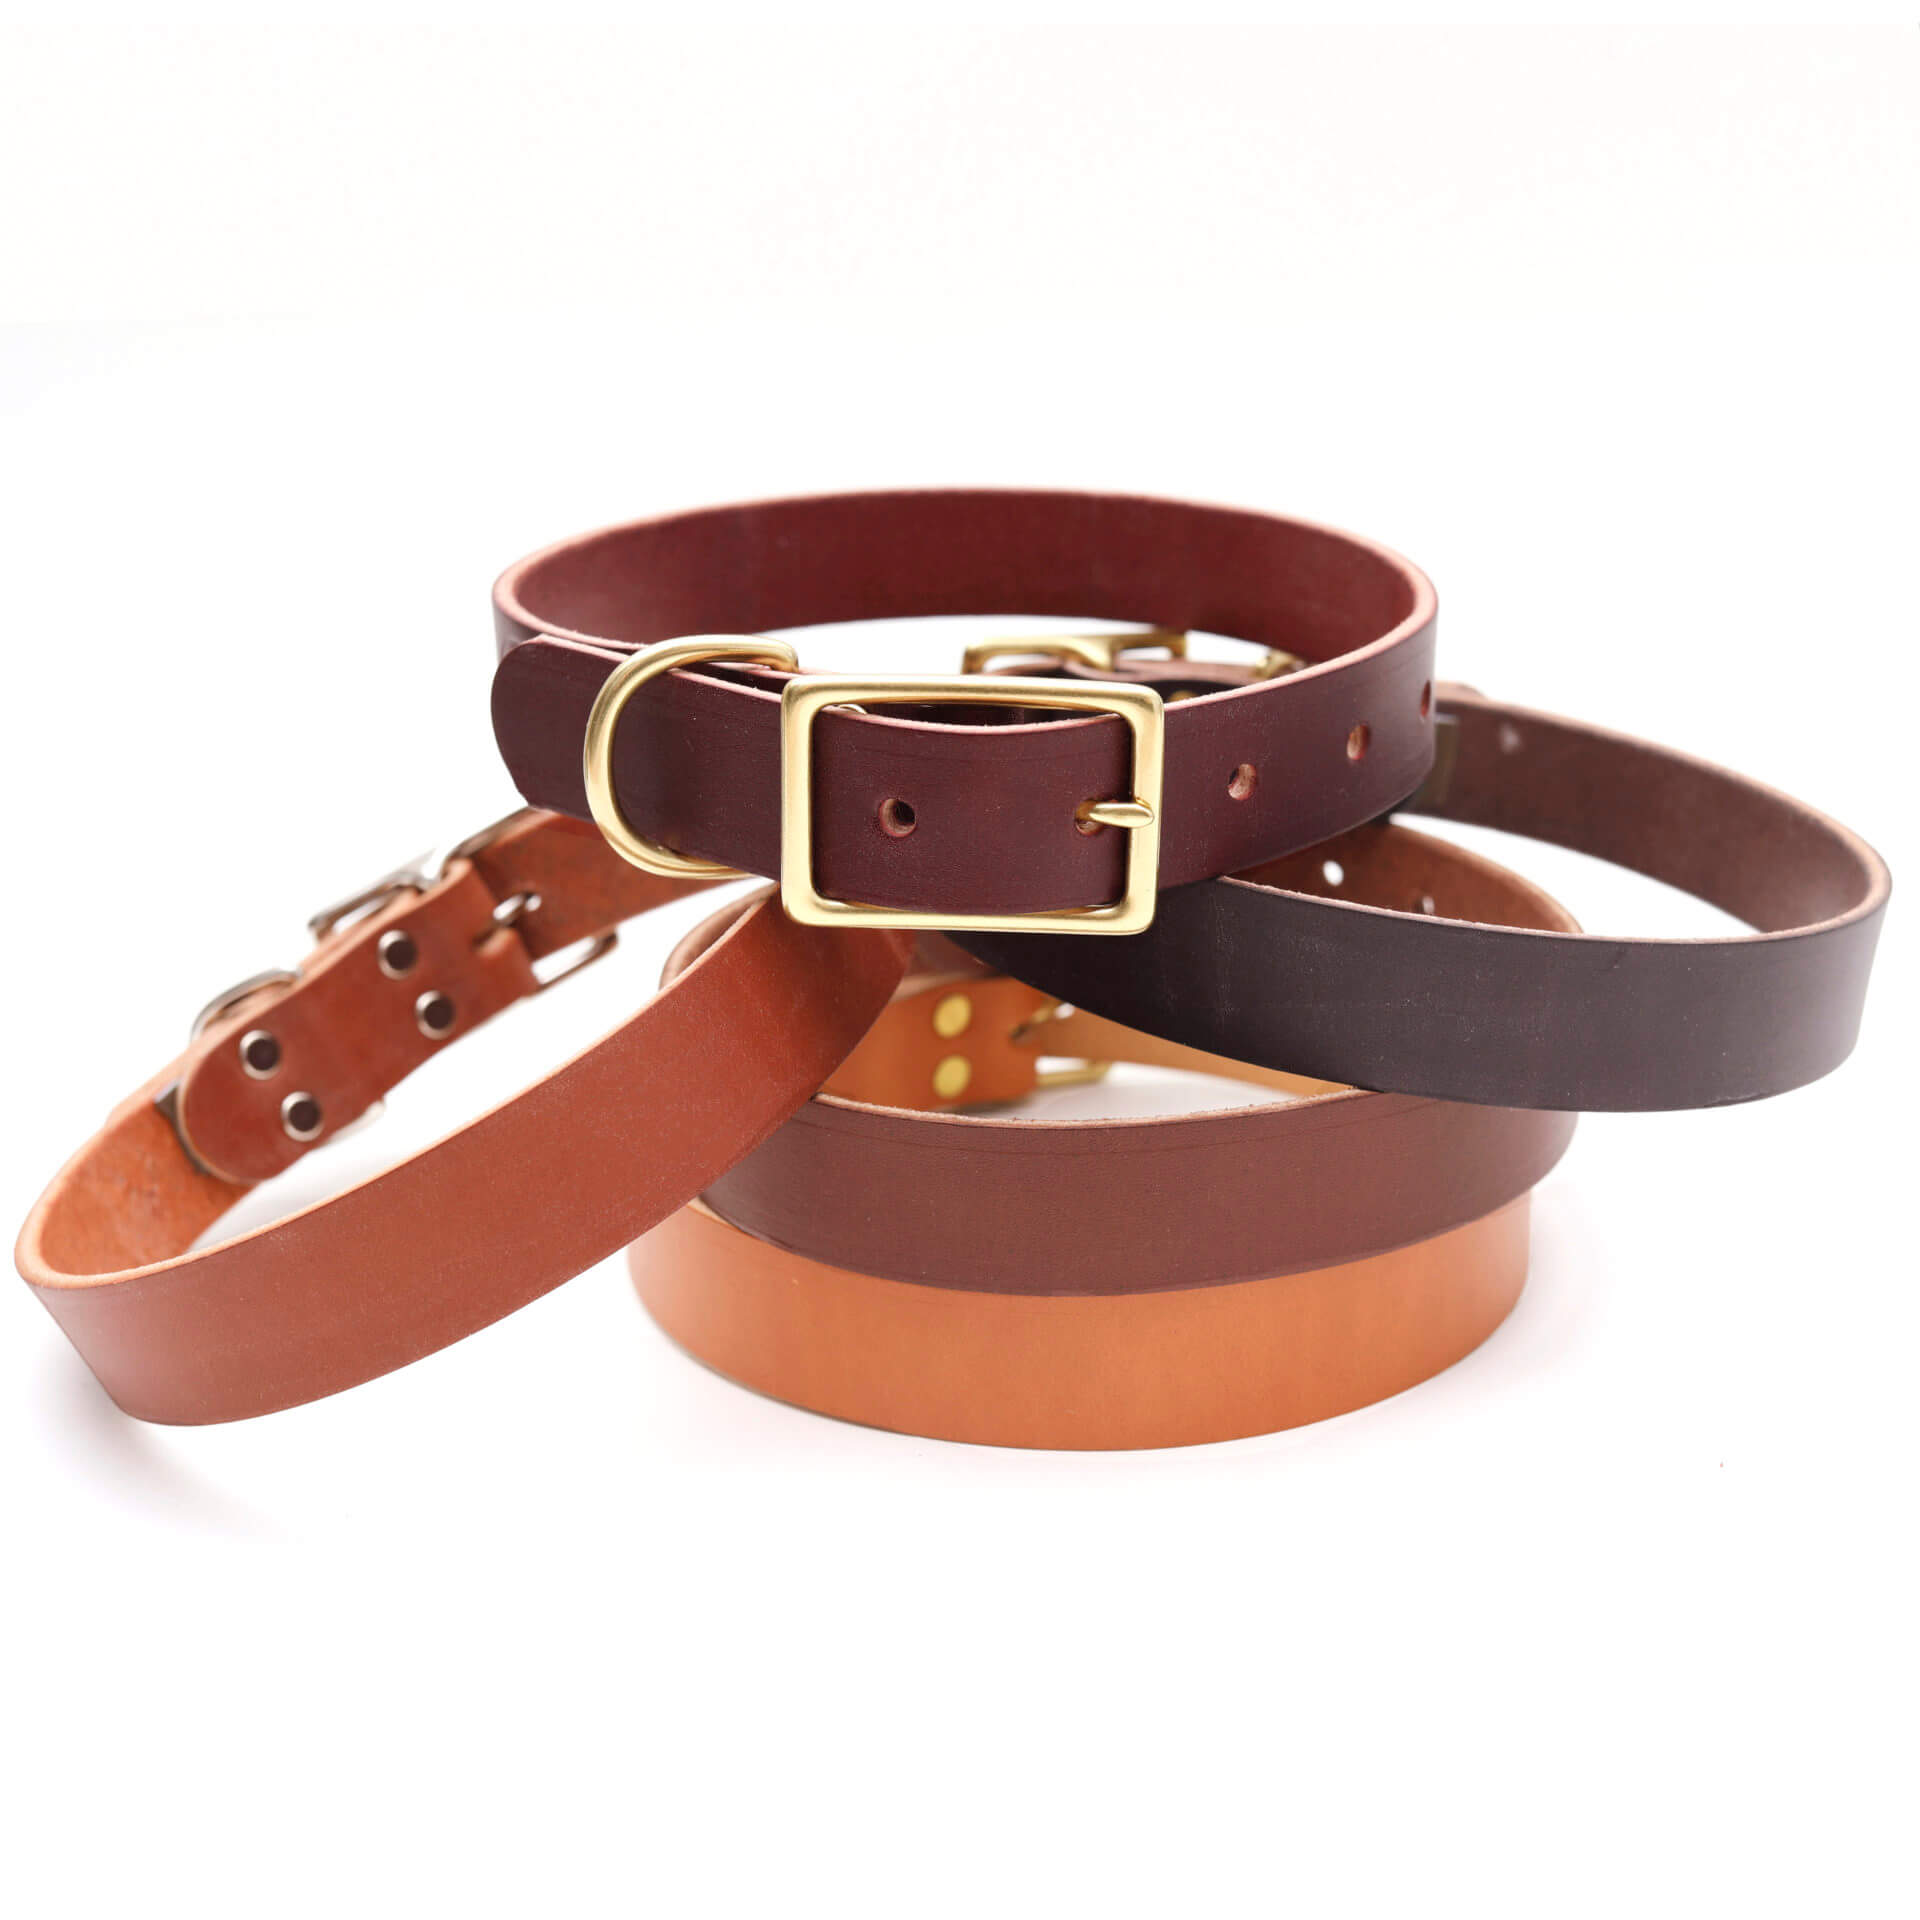 Brown - Luxury Designer Monogram Empreinte Leather Dog Collar